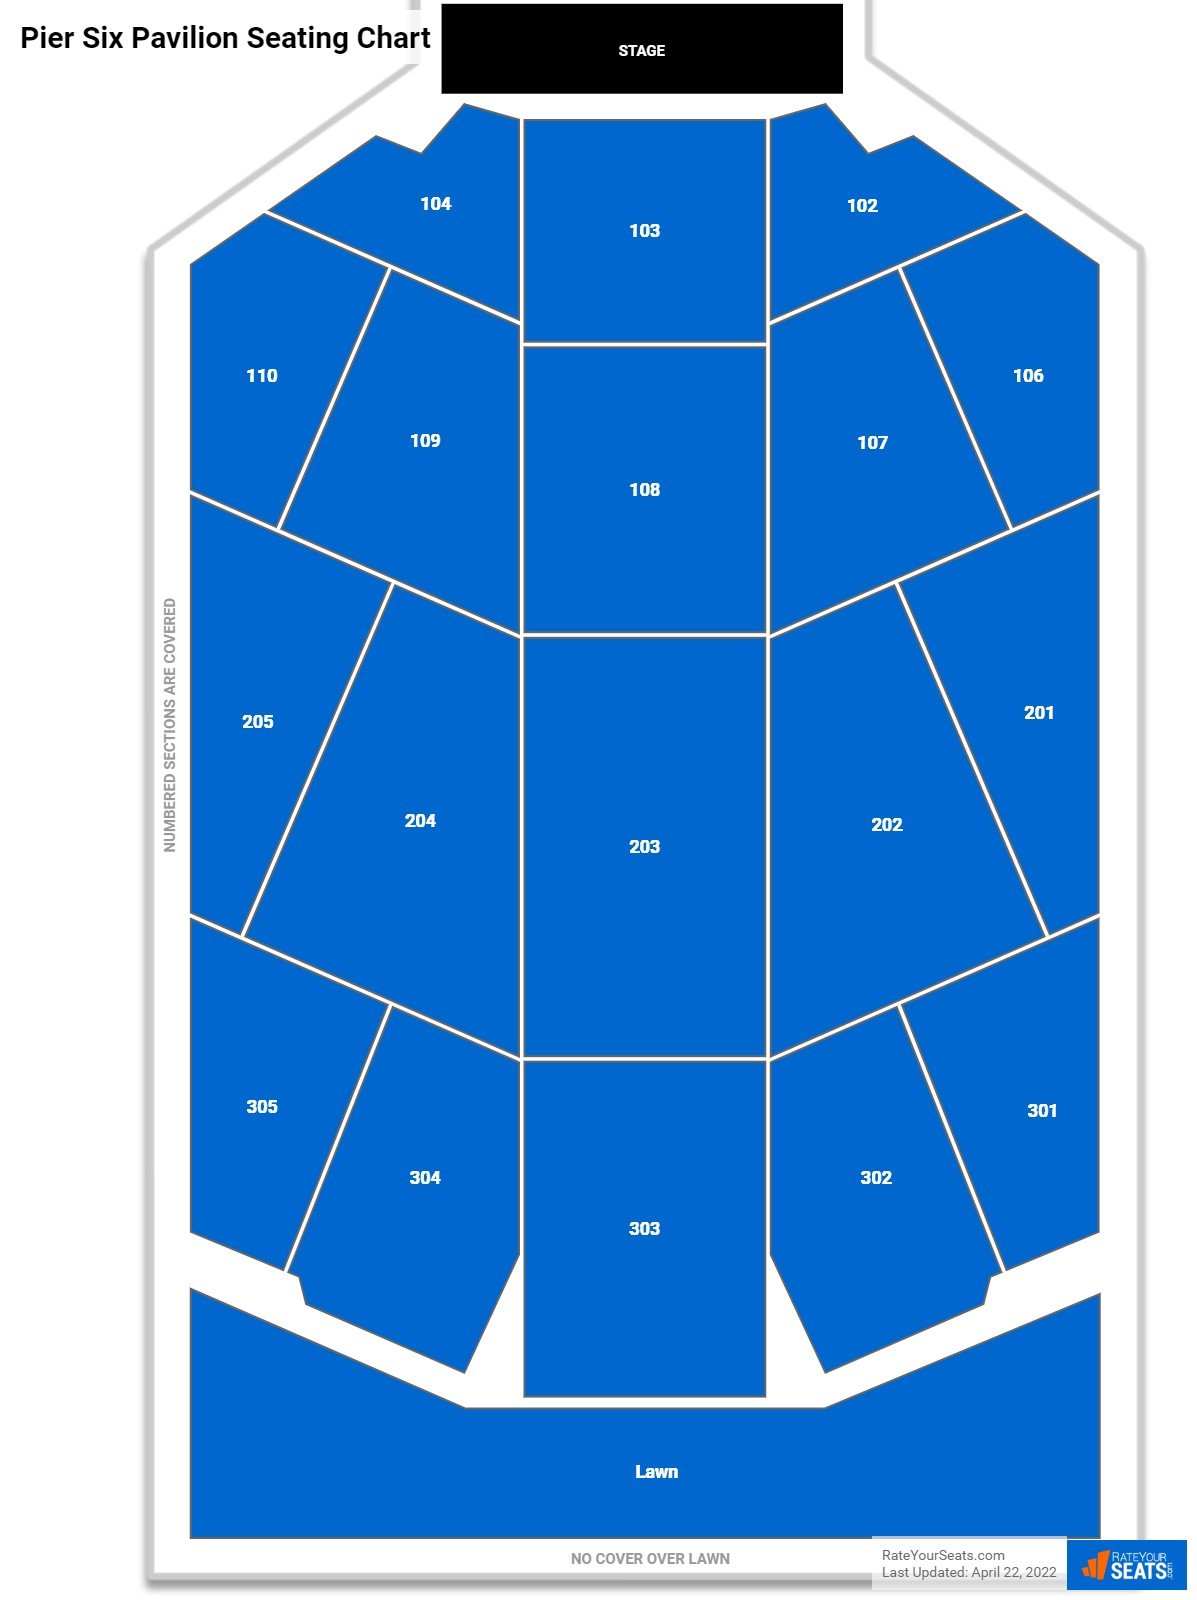 Pier Six Pavilion Concert Seating Chart